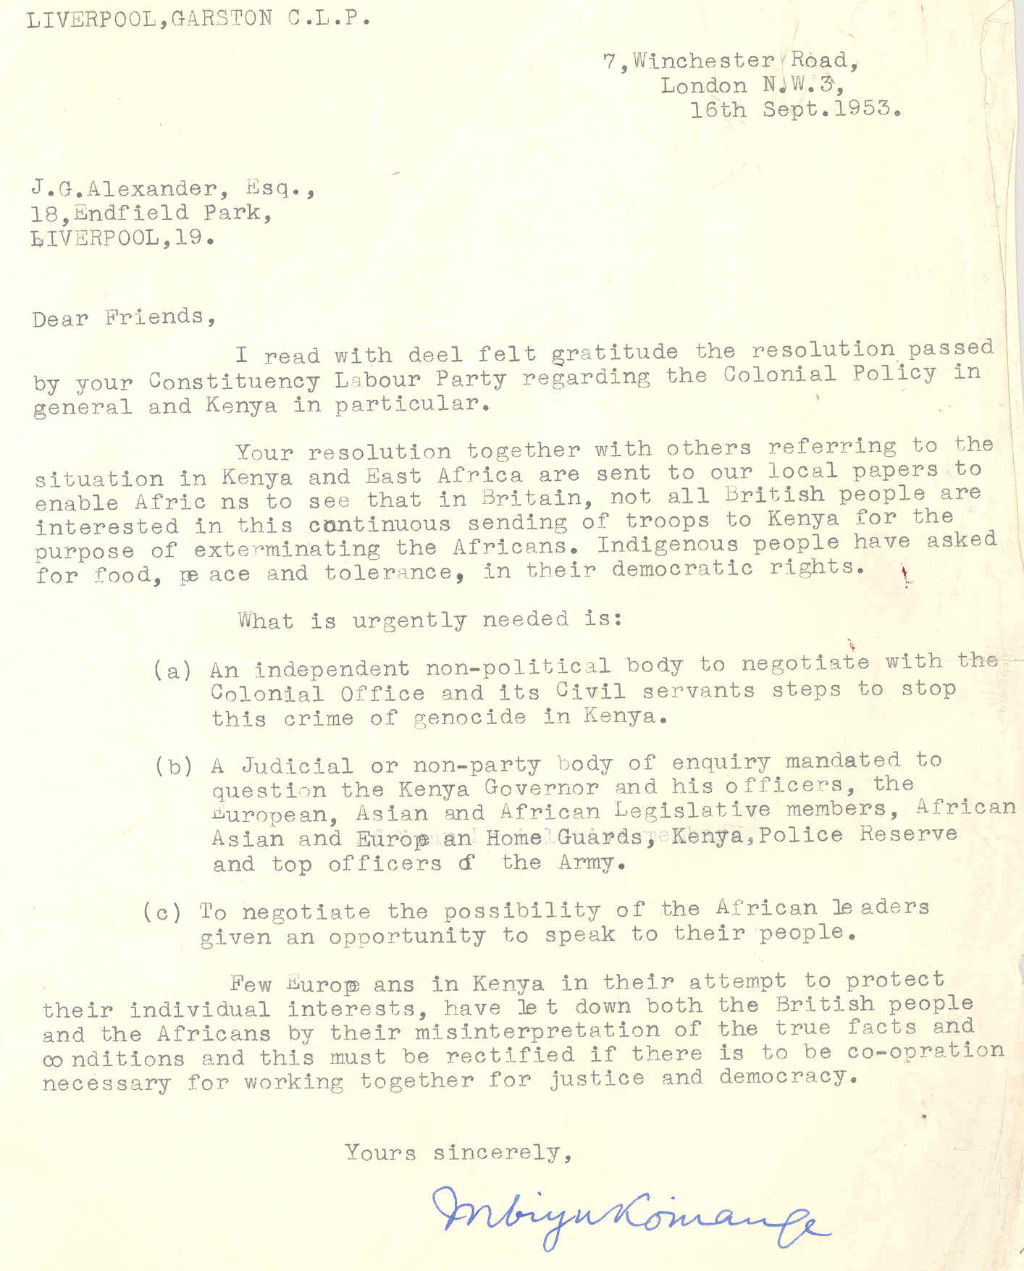 Letter from Mbiyu Koinange regarding the situation in Kenya, 1953